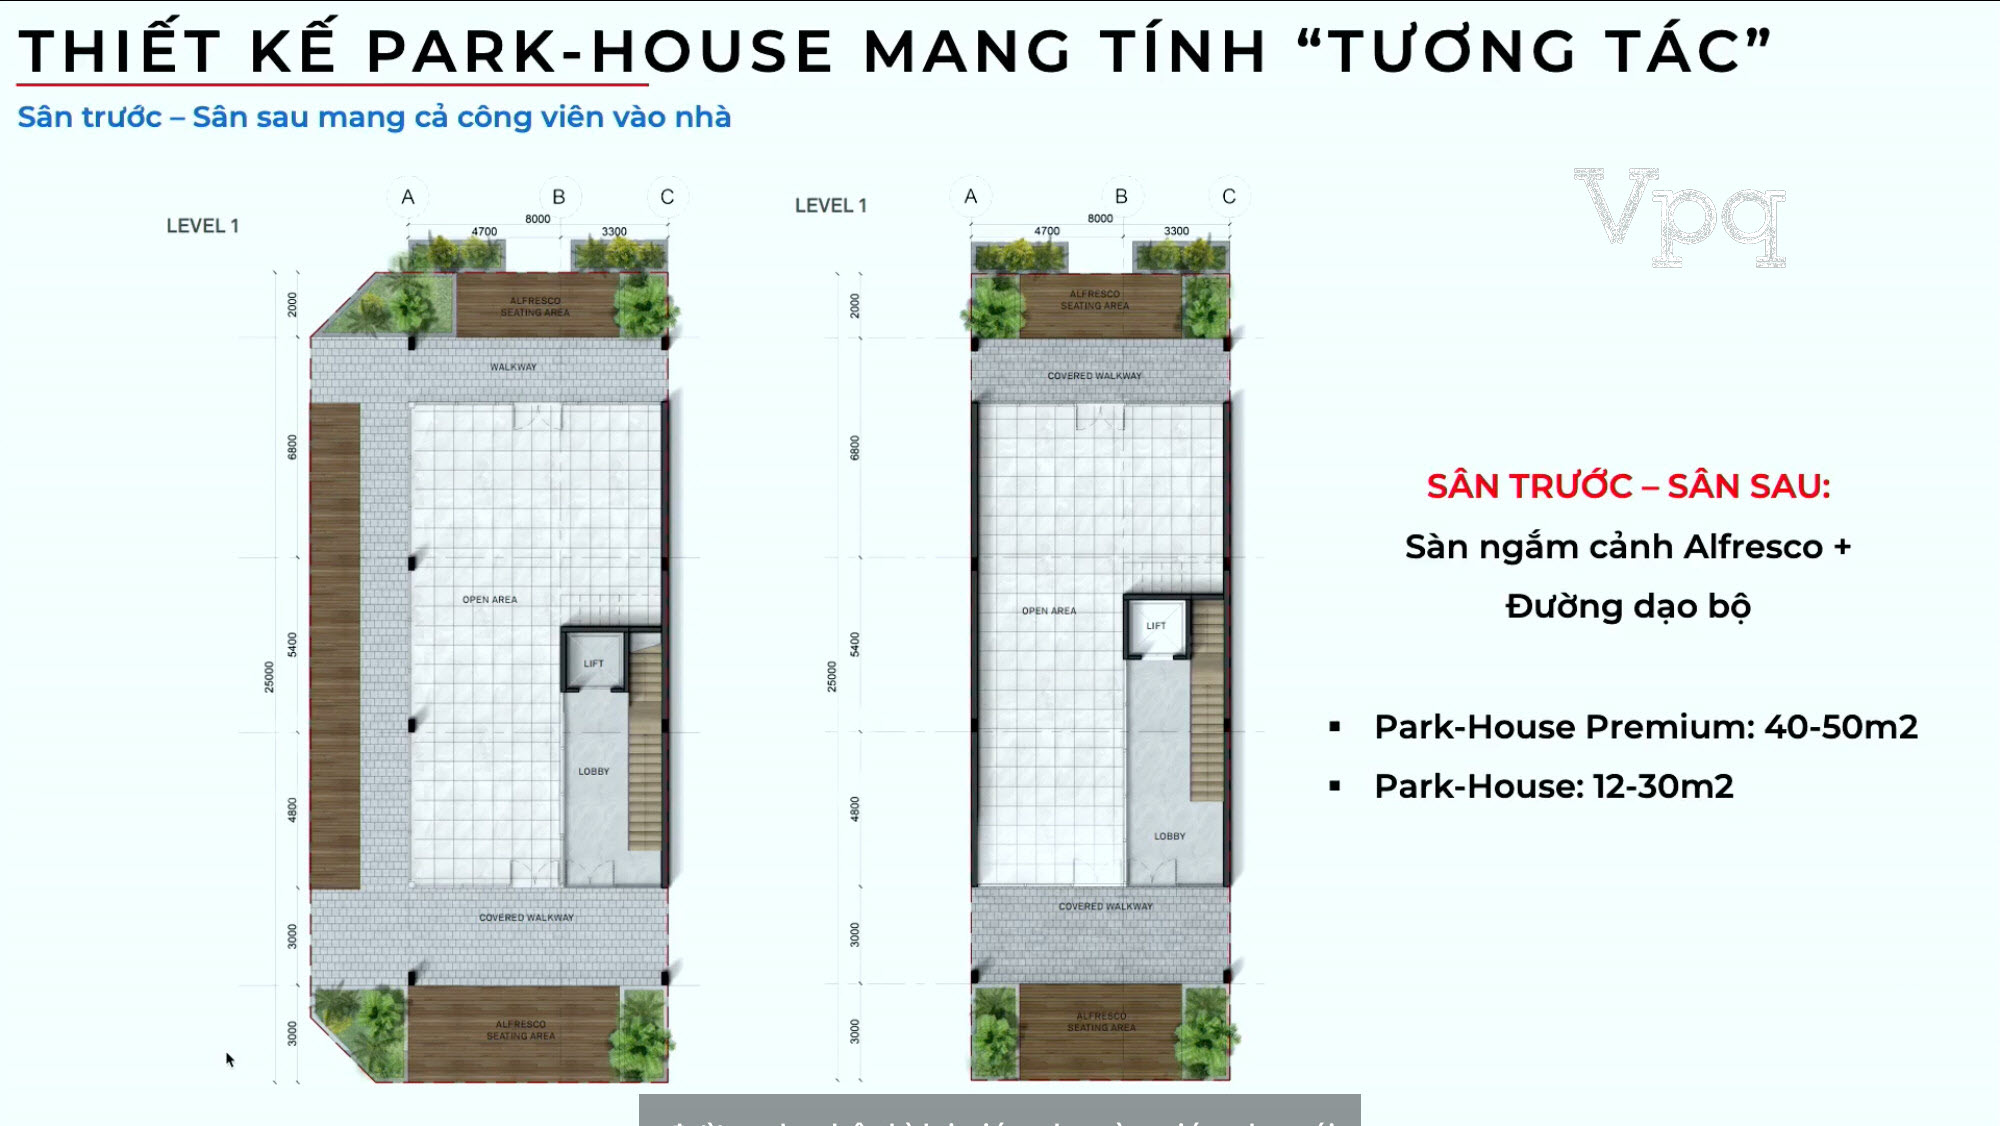 Thiết kế Makaio Park House mang tính tương tác